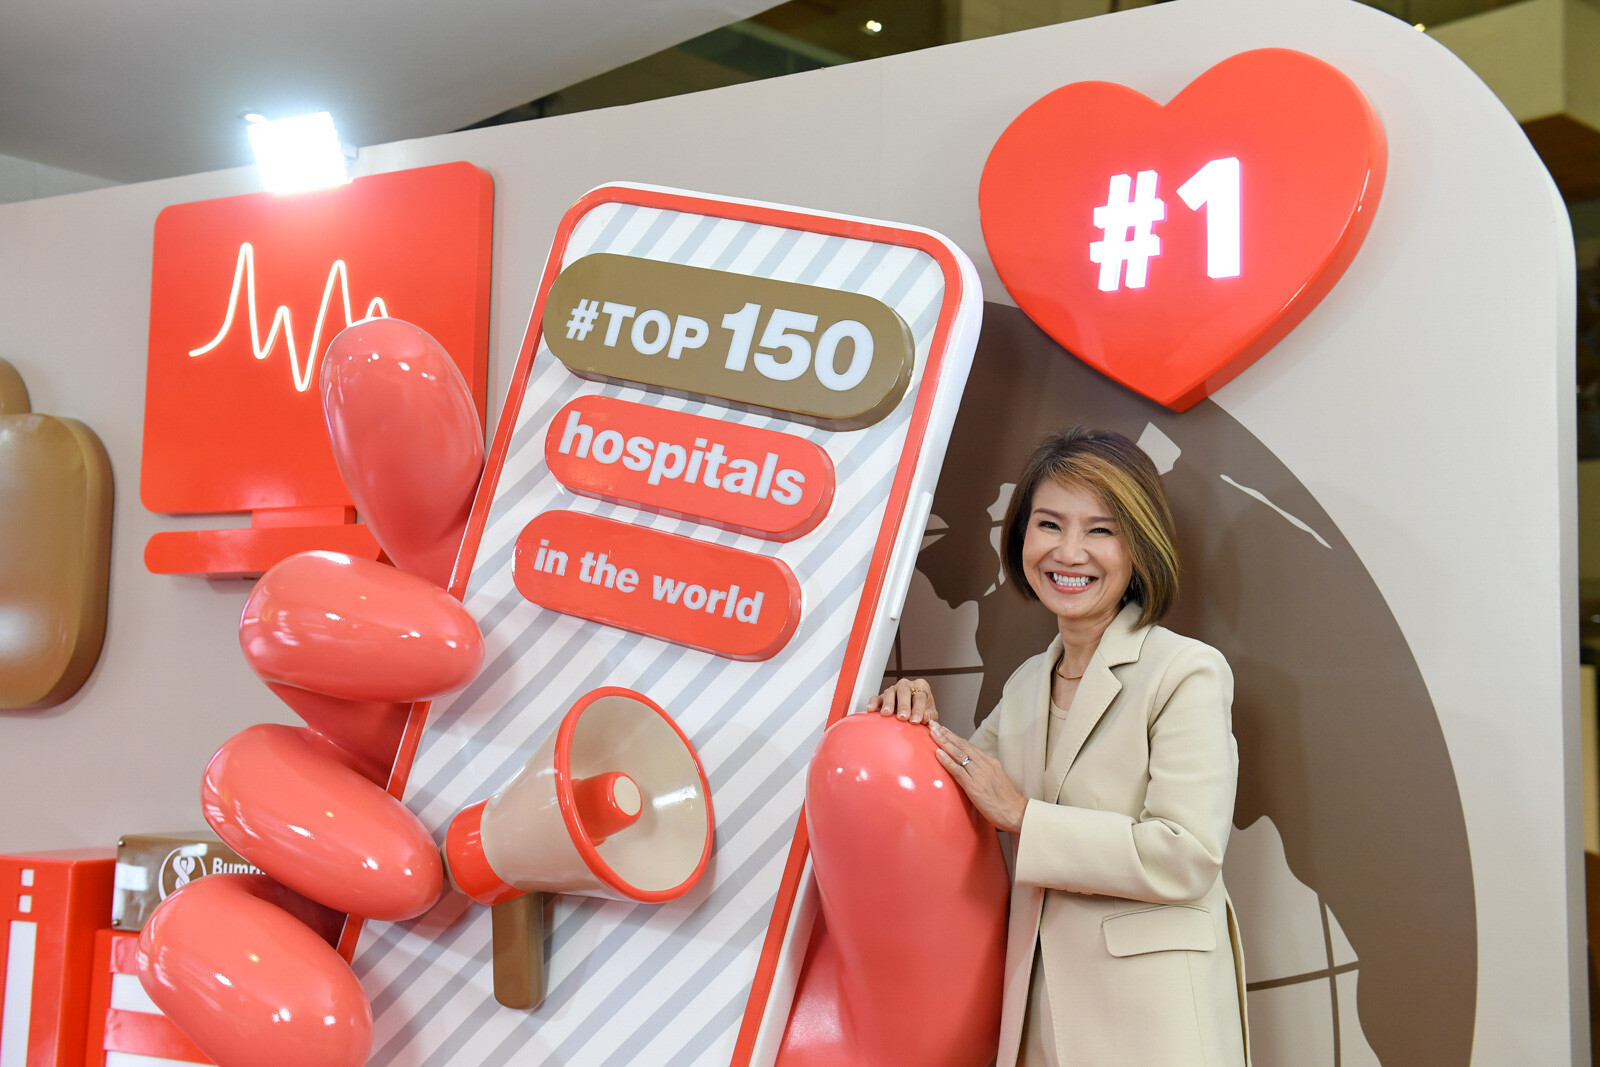 บำรุงราษฎร์ ปลื้มผลสำรวจ Newsweek ติดอันดับ 1 โรงพยาบาลที่ดีที่สุดในไทย 2 ปีซ้อน และติดอันดับ Top 150 โรงพยาบาลที่ดีที่สุดในโลก ปี 2565